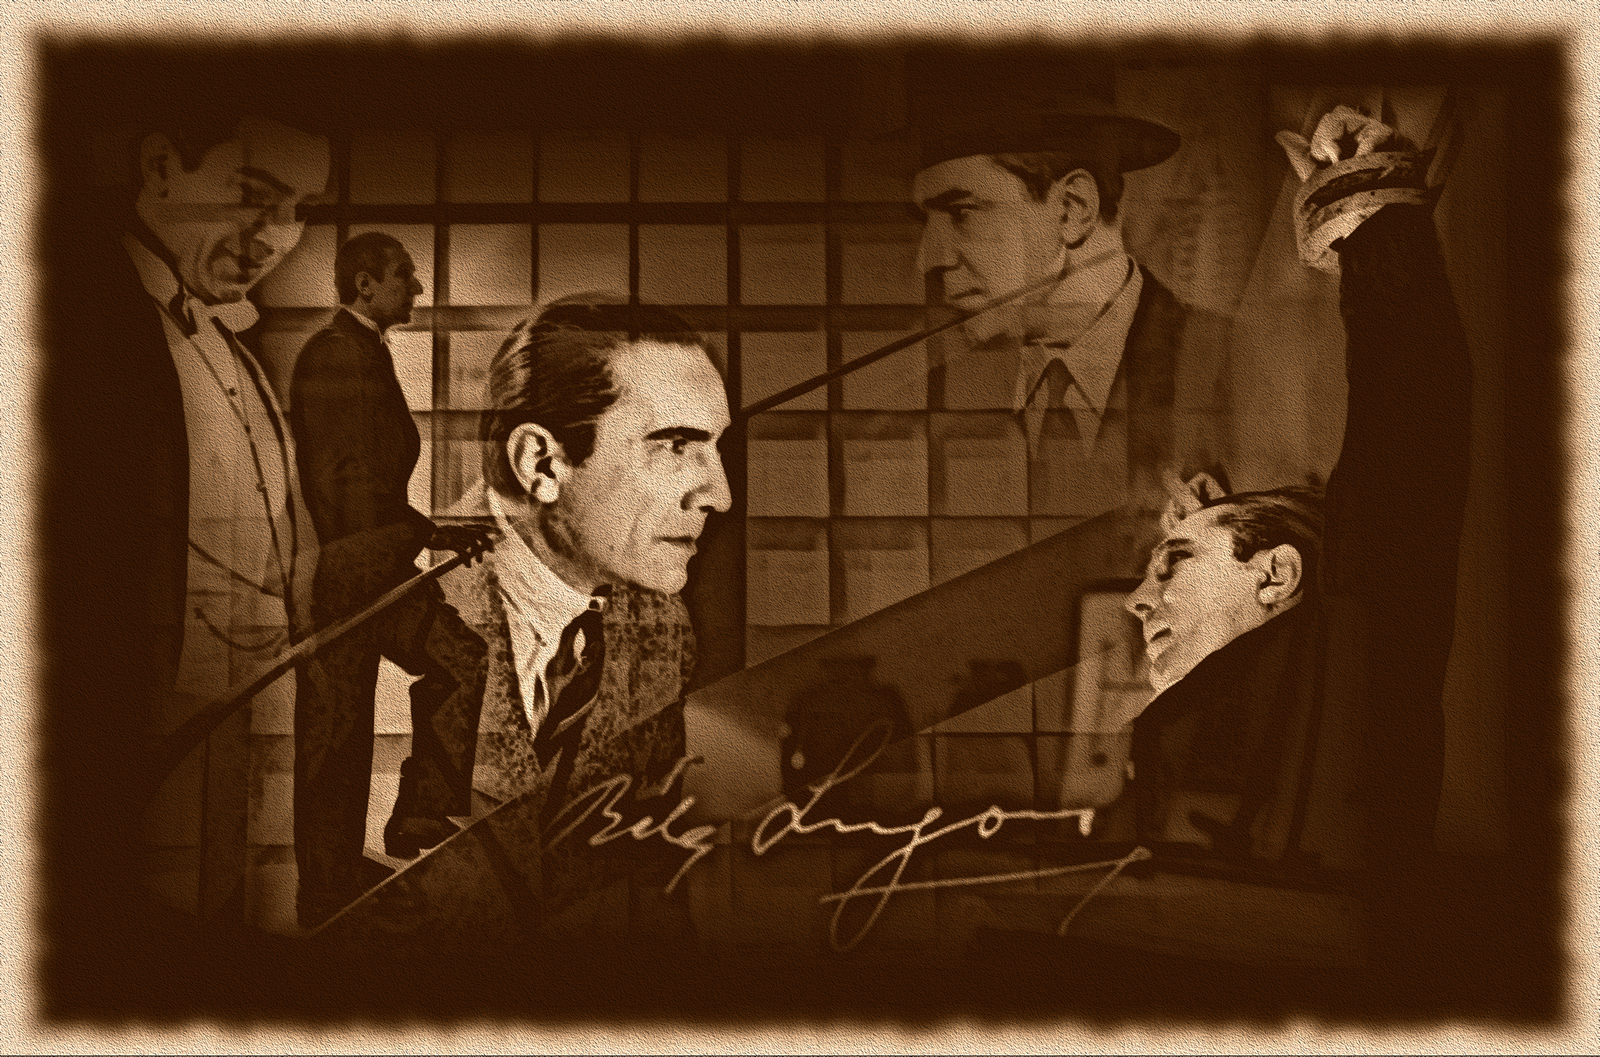 Bela Lugosi Wallpaper By Darksaxebleu